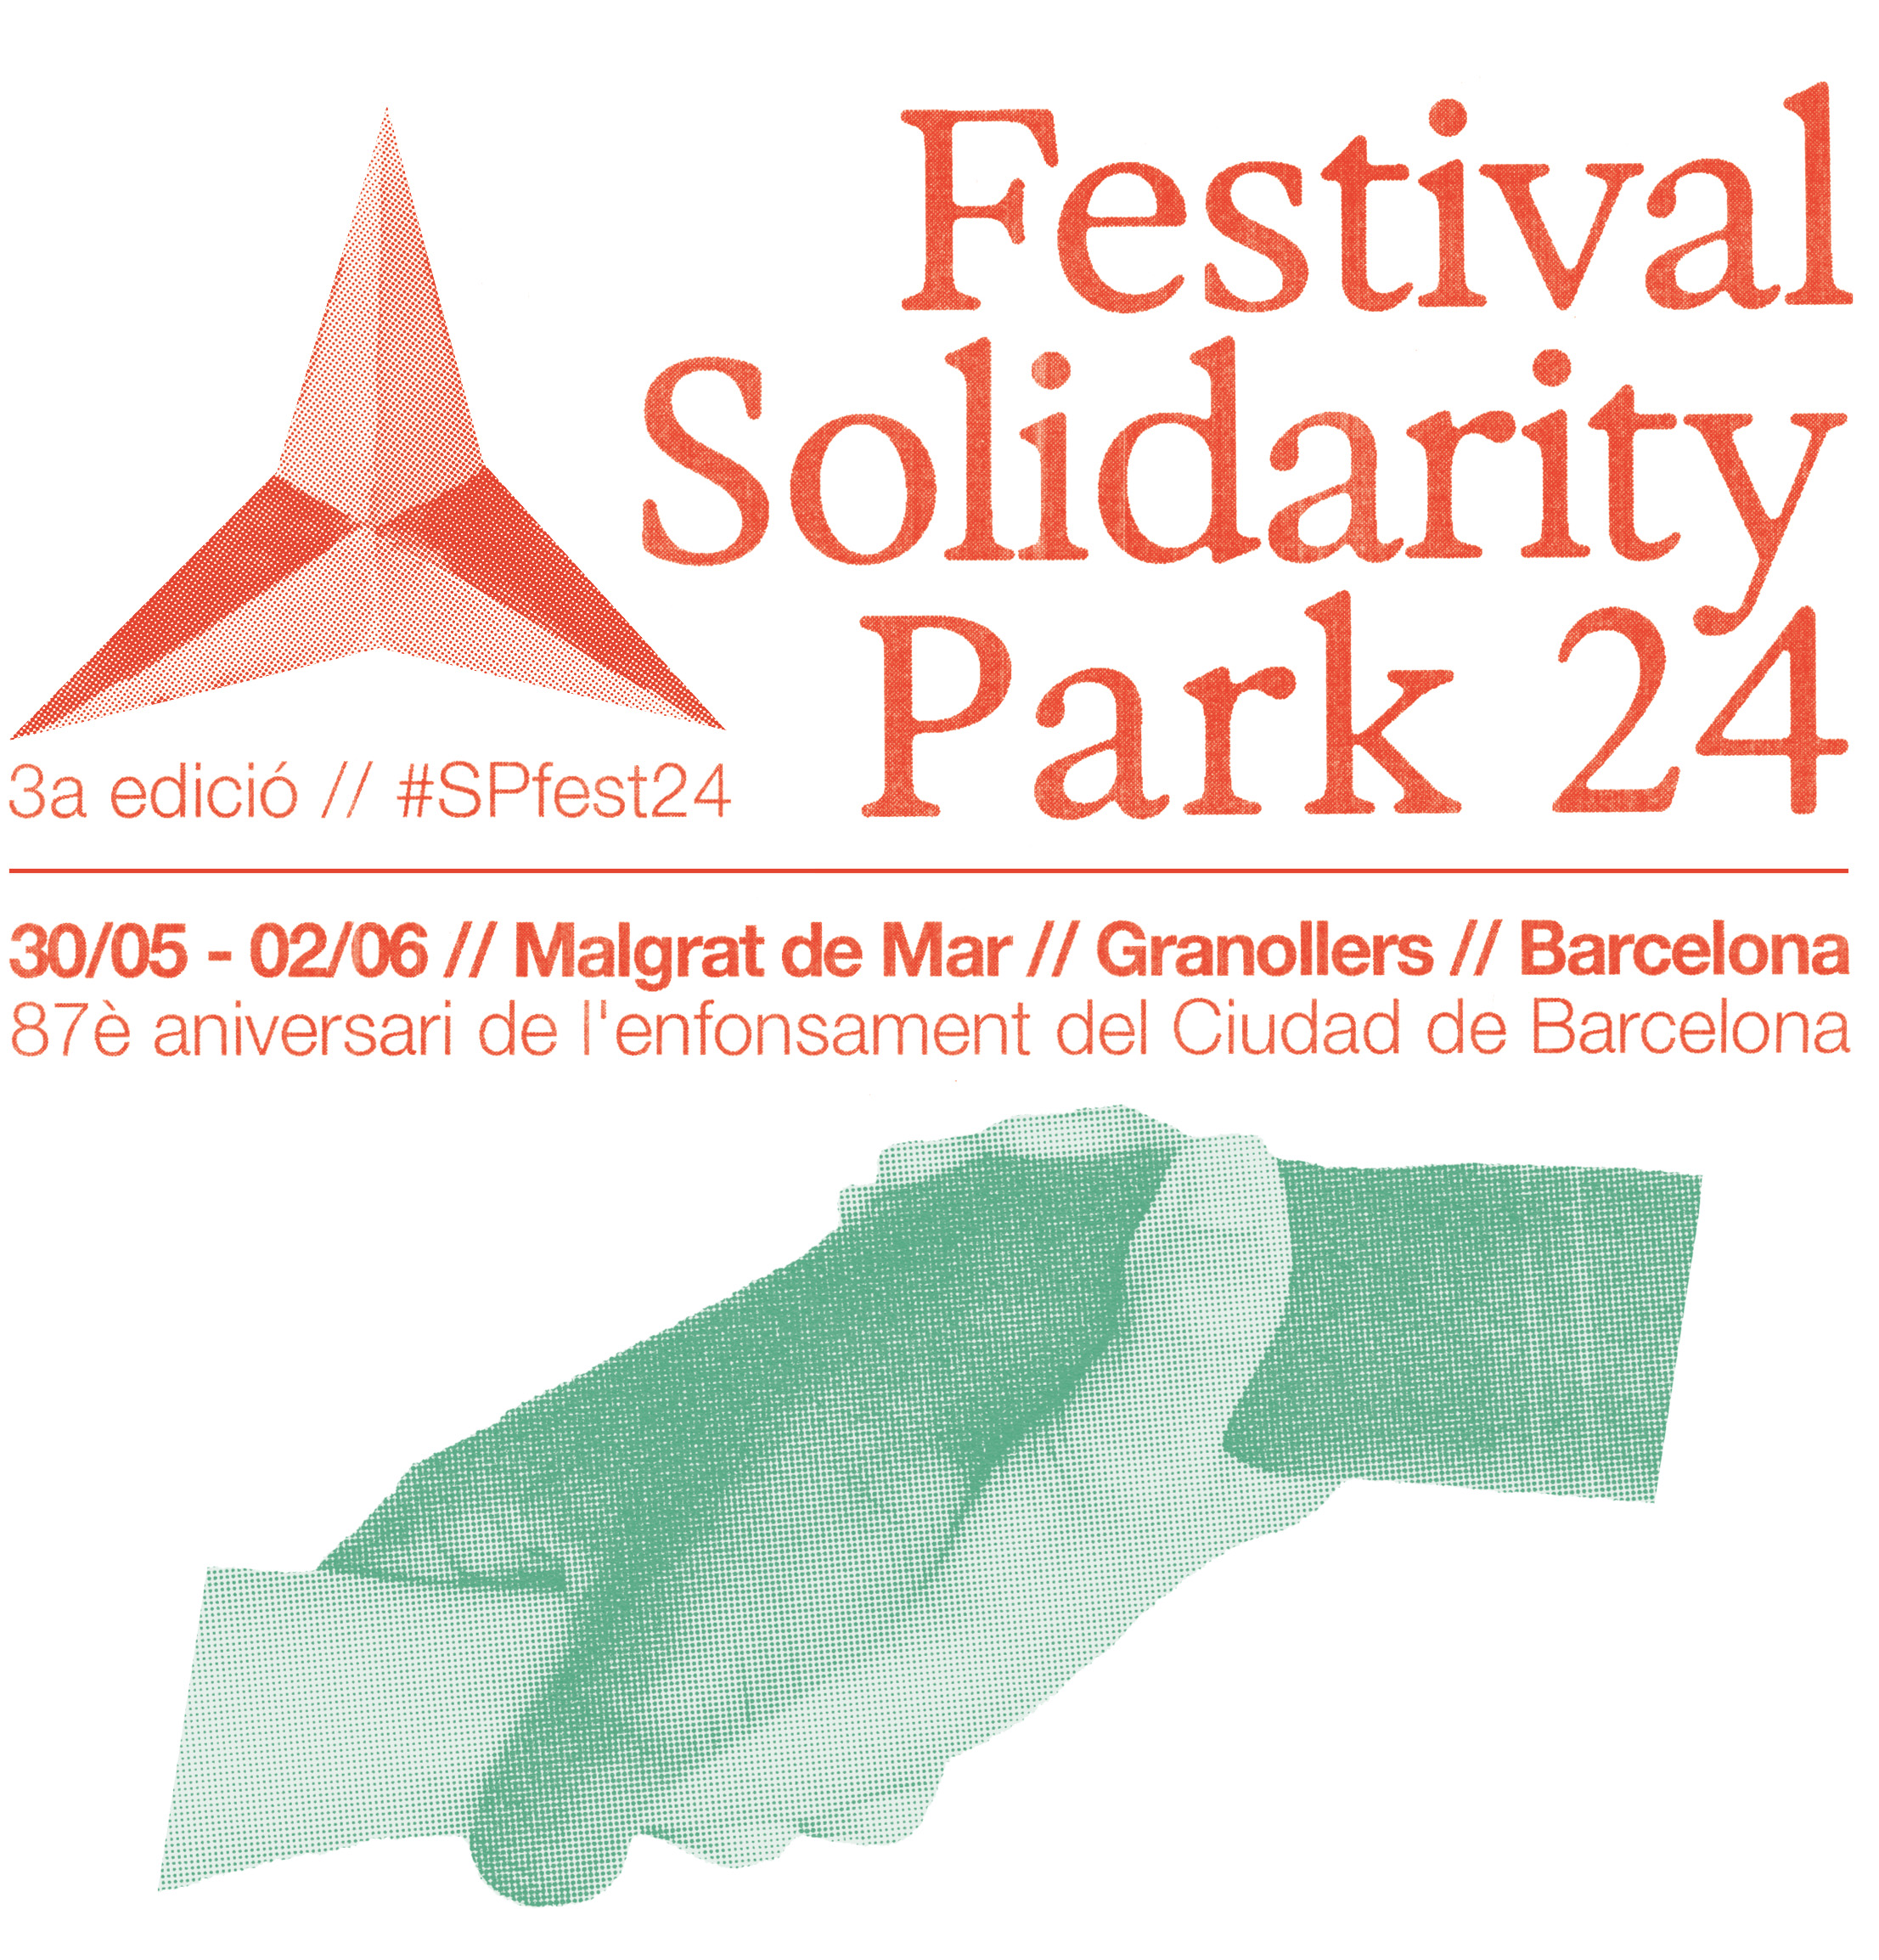 Festival Solidarity Park: Inauguració exposició fotogràfica